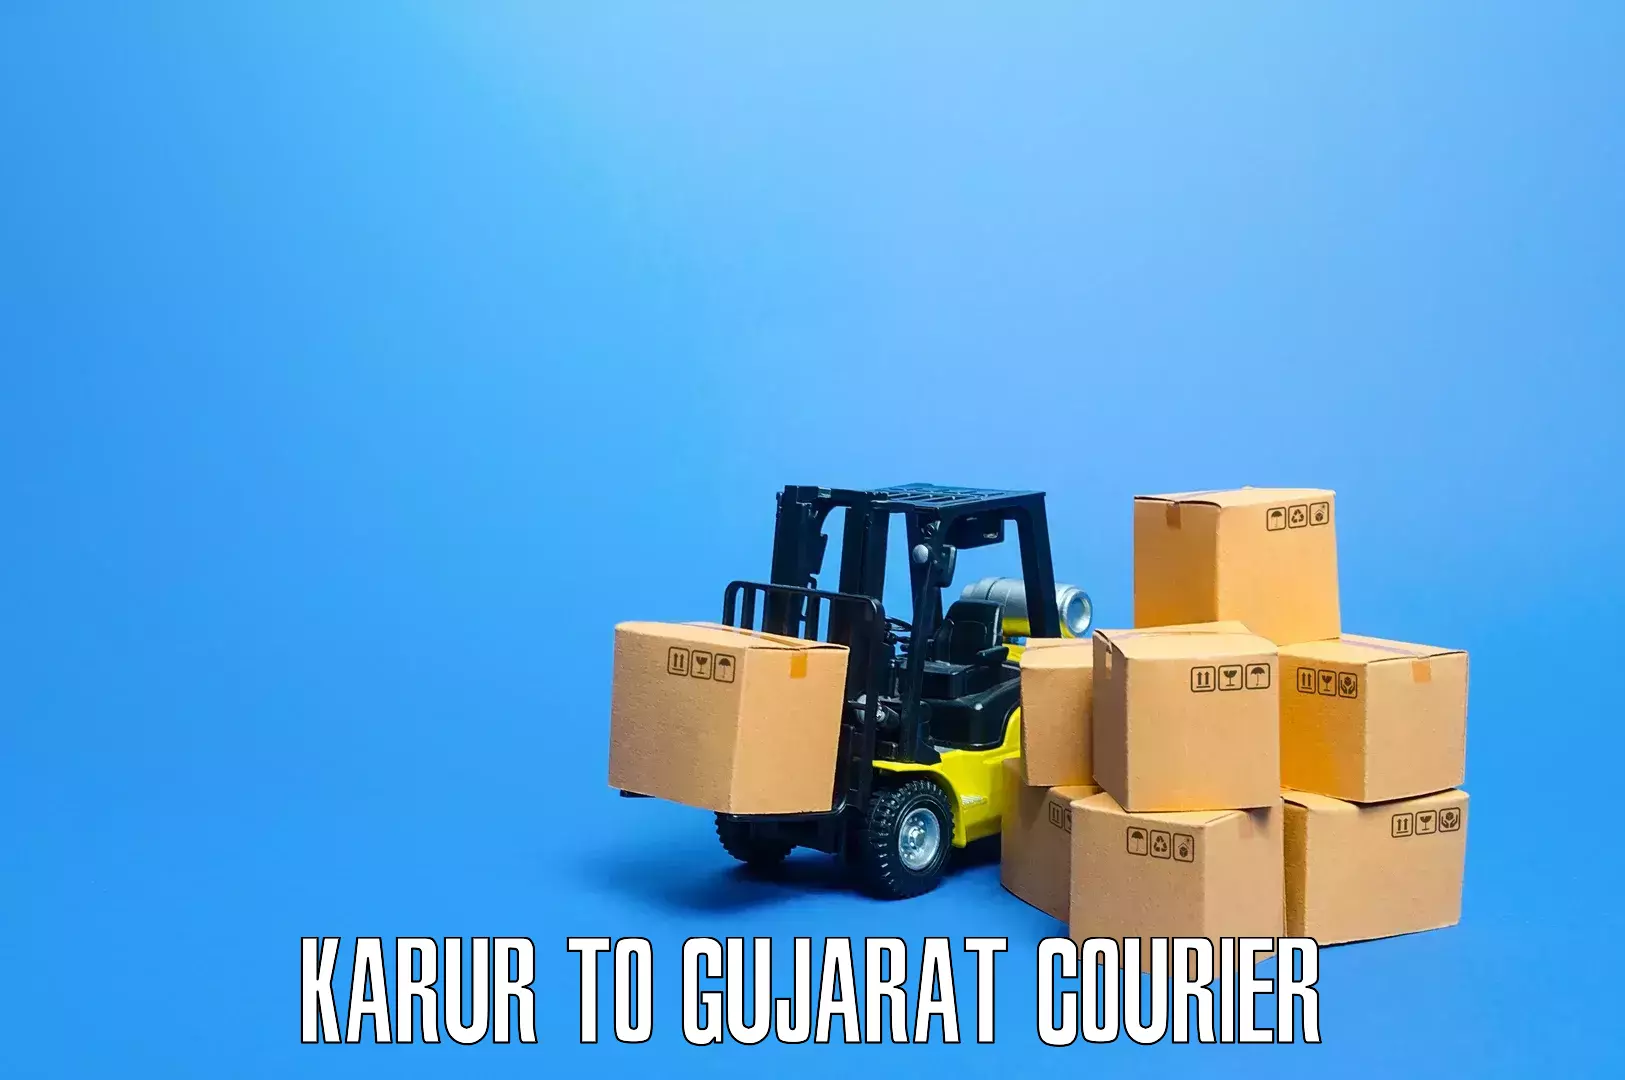 Household goods transporters Karur to IIIT Surat